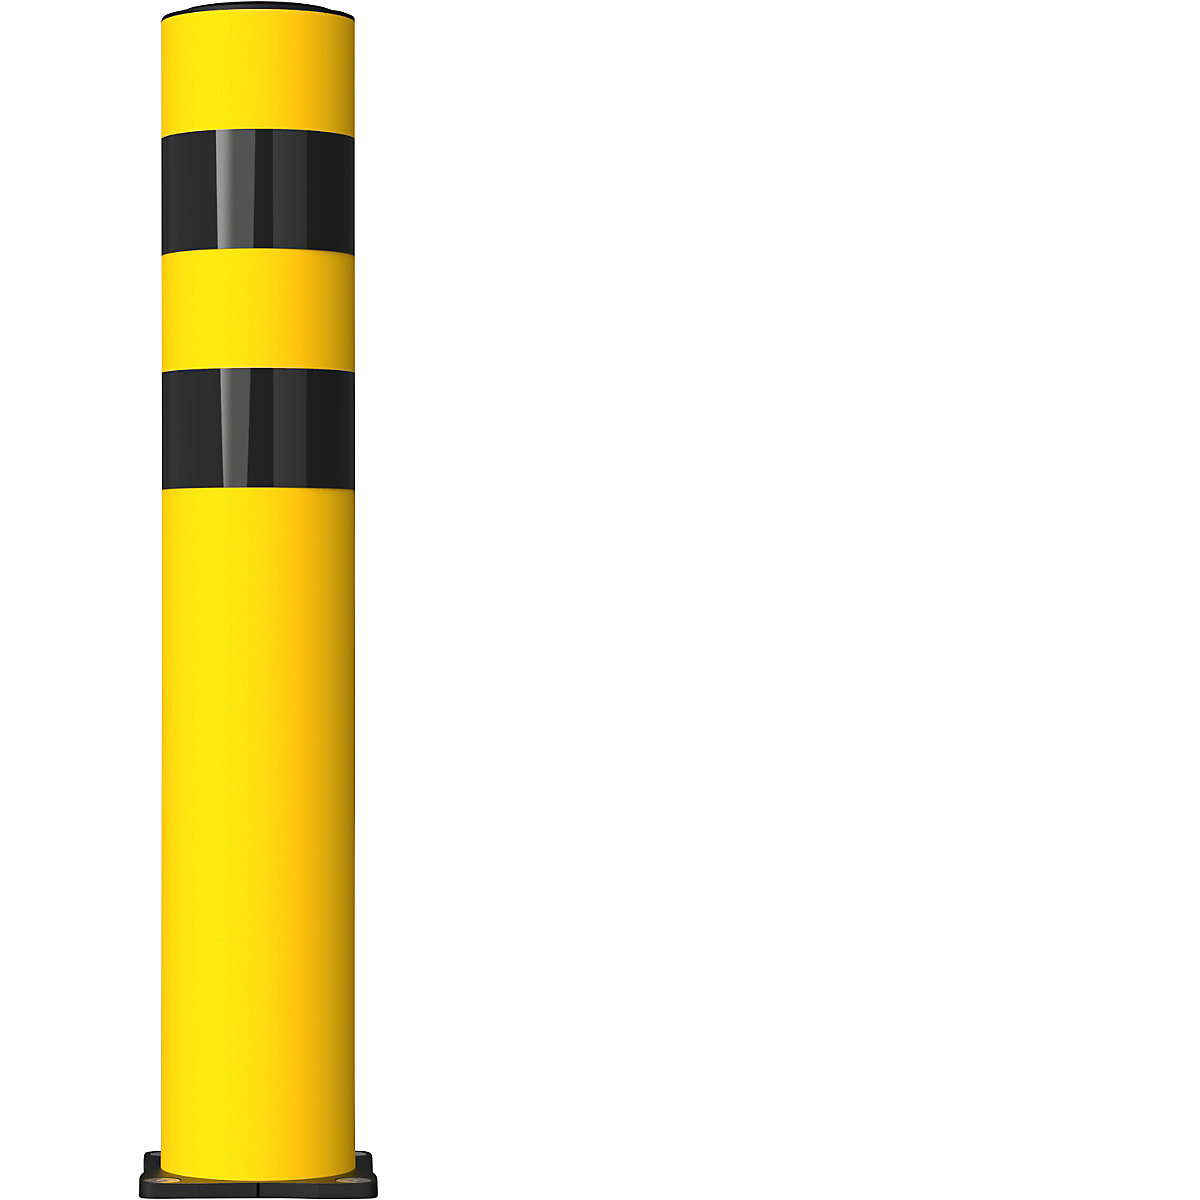 Ochranný protinárazový sloupek FLEX IMPACT, Ø 125 mm, výška 750 mm, žlutá, spodní deska z ušlechtilé oceli